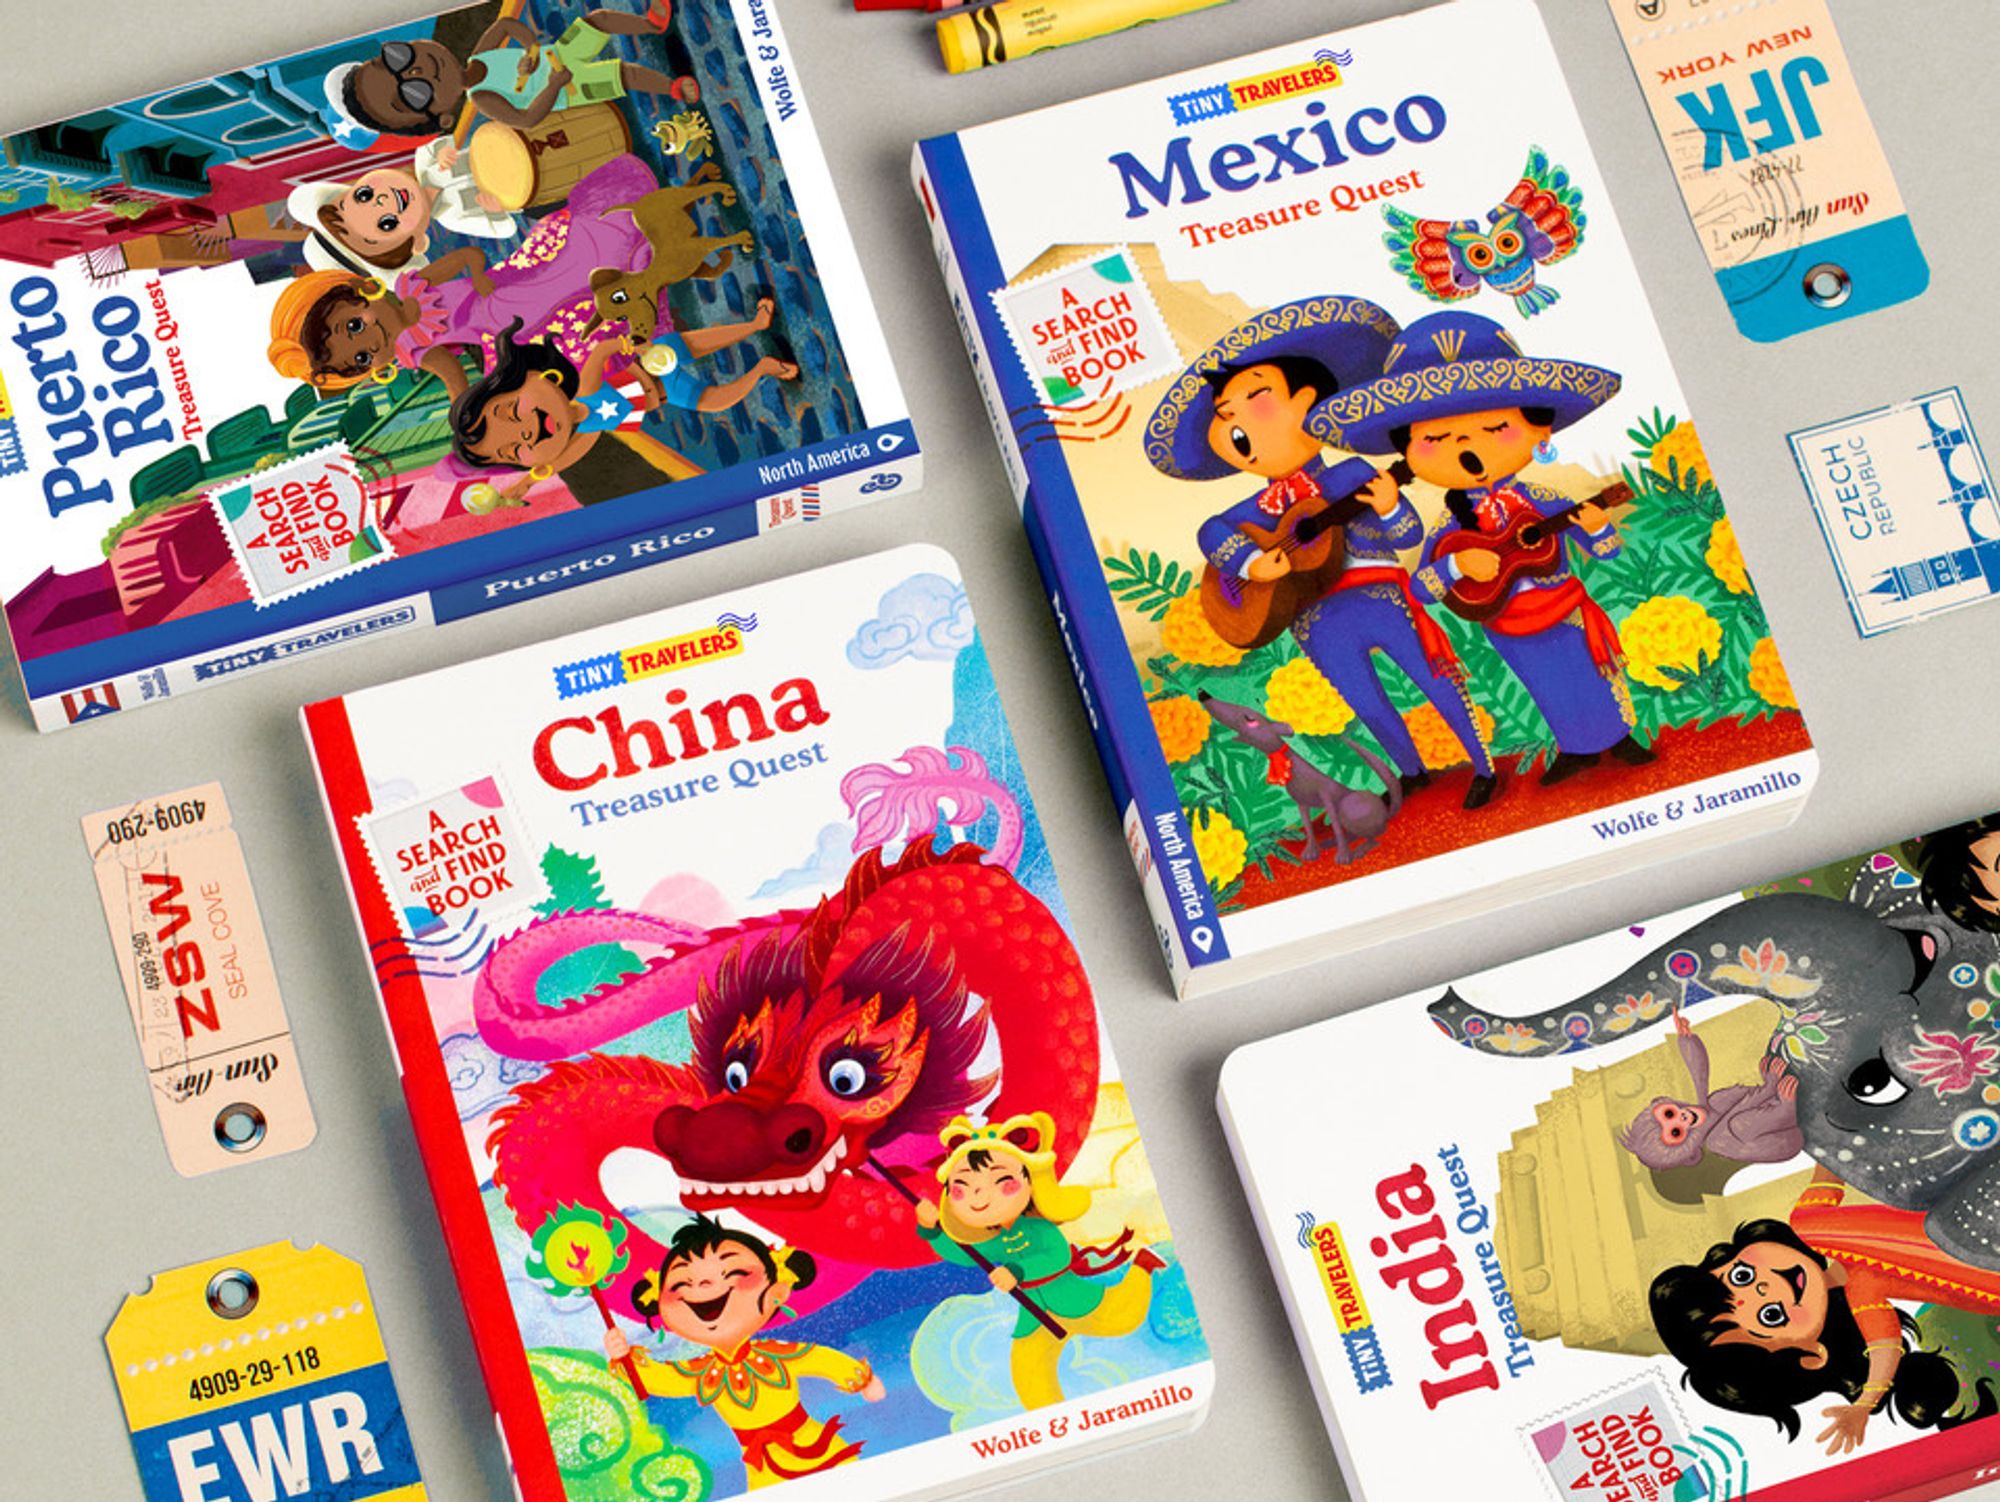 Bilingual Publisher Encantos Raises $2 Million to Launch Subscription Box, Expand Spanish Content